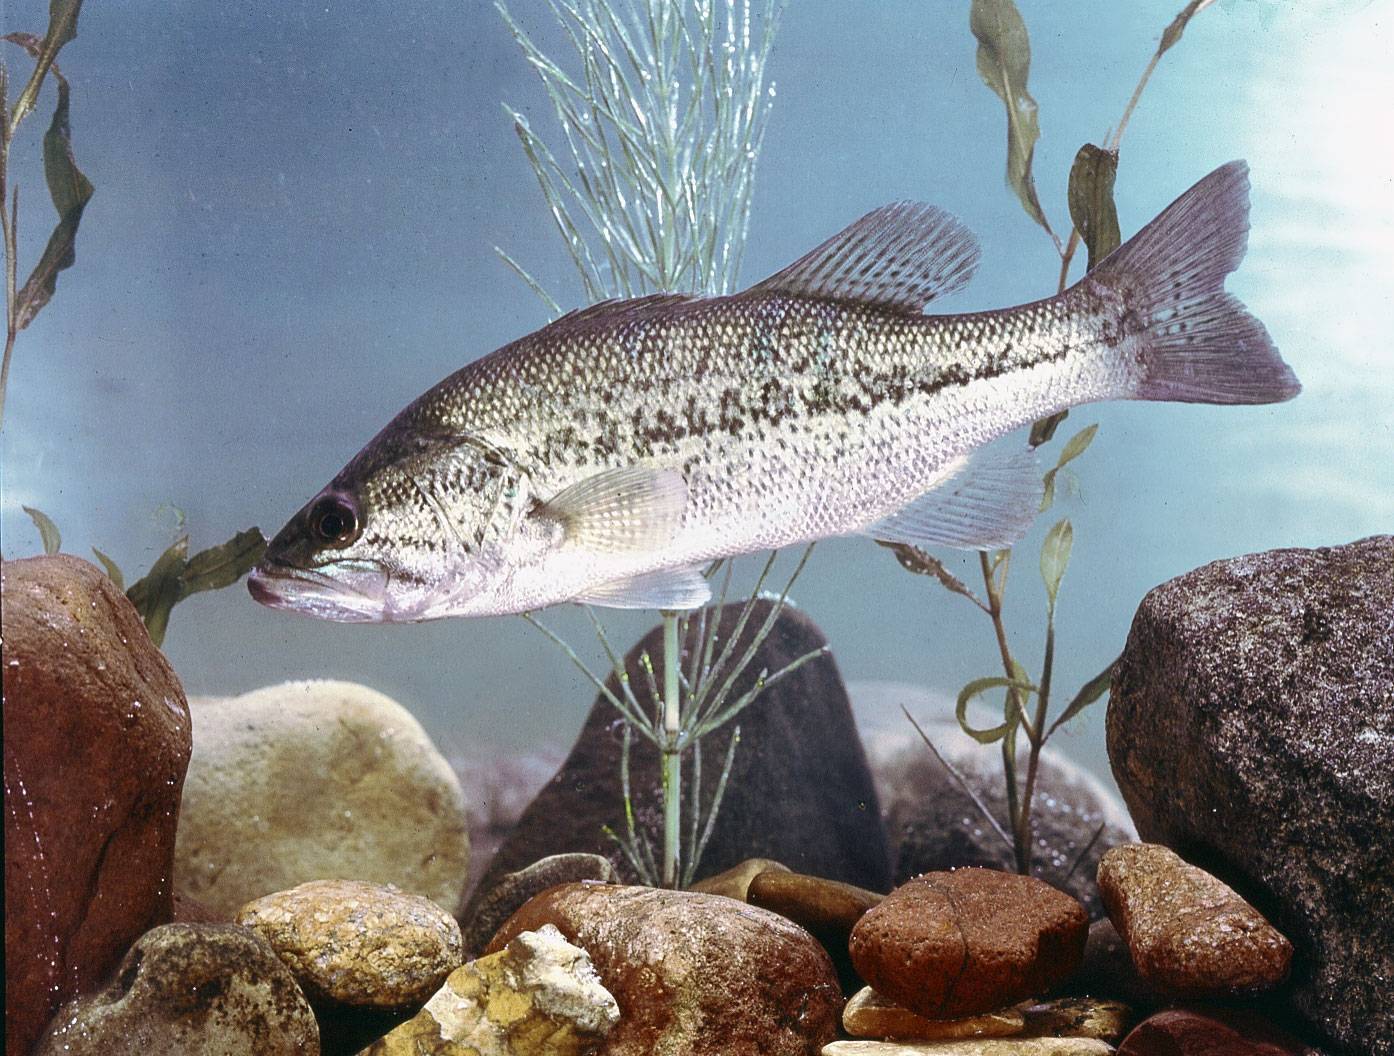 Басс большеротый фото и описание – каталог рыб, смотреть онлайн